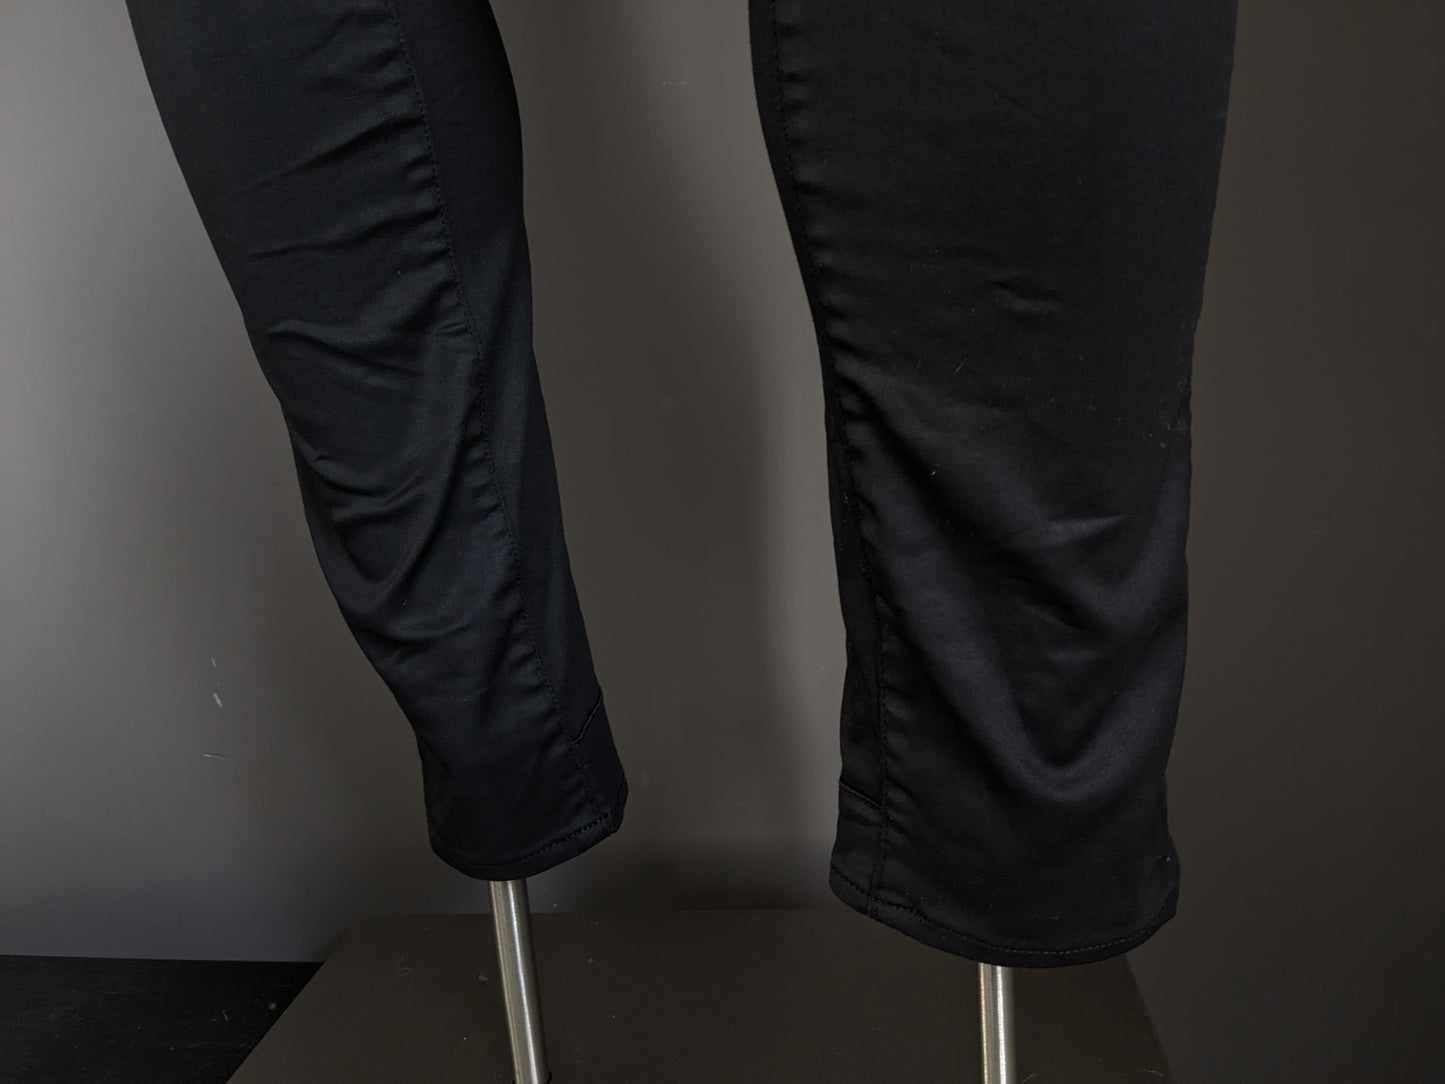 G-Star Raw Jeans. Schwarze Beschichtung. Typ 5620 Custom. Größe W29 - L32. Strecken.